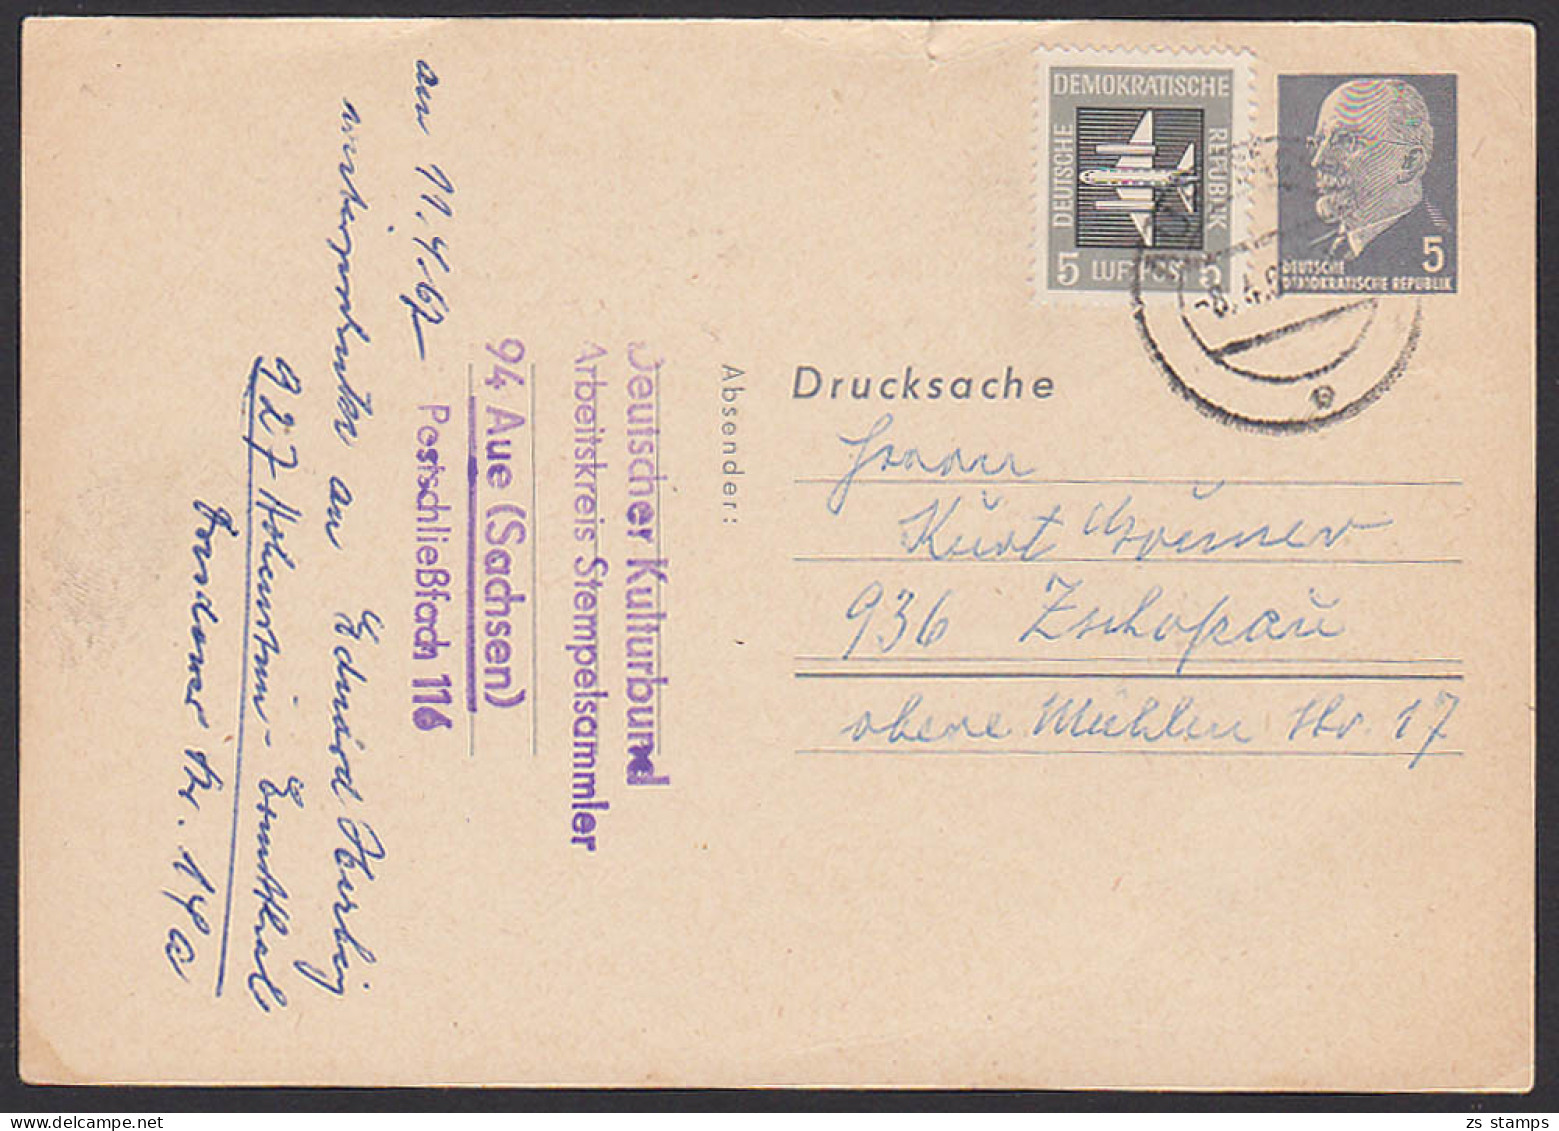 Aue Walter Ulbricht 5 Pf. Ganzsache Mit Zusatzfrankatur Privatganzsache Blanko PP7/1a, 8.4.67 - Postkarten - Gebraucht